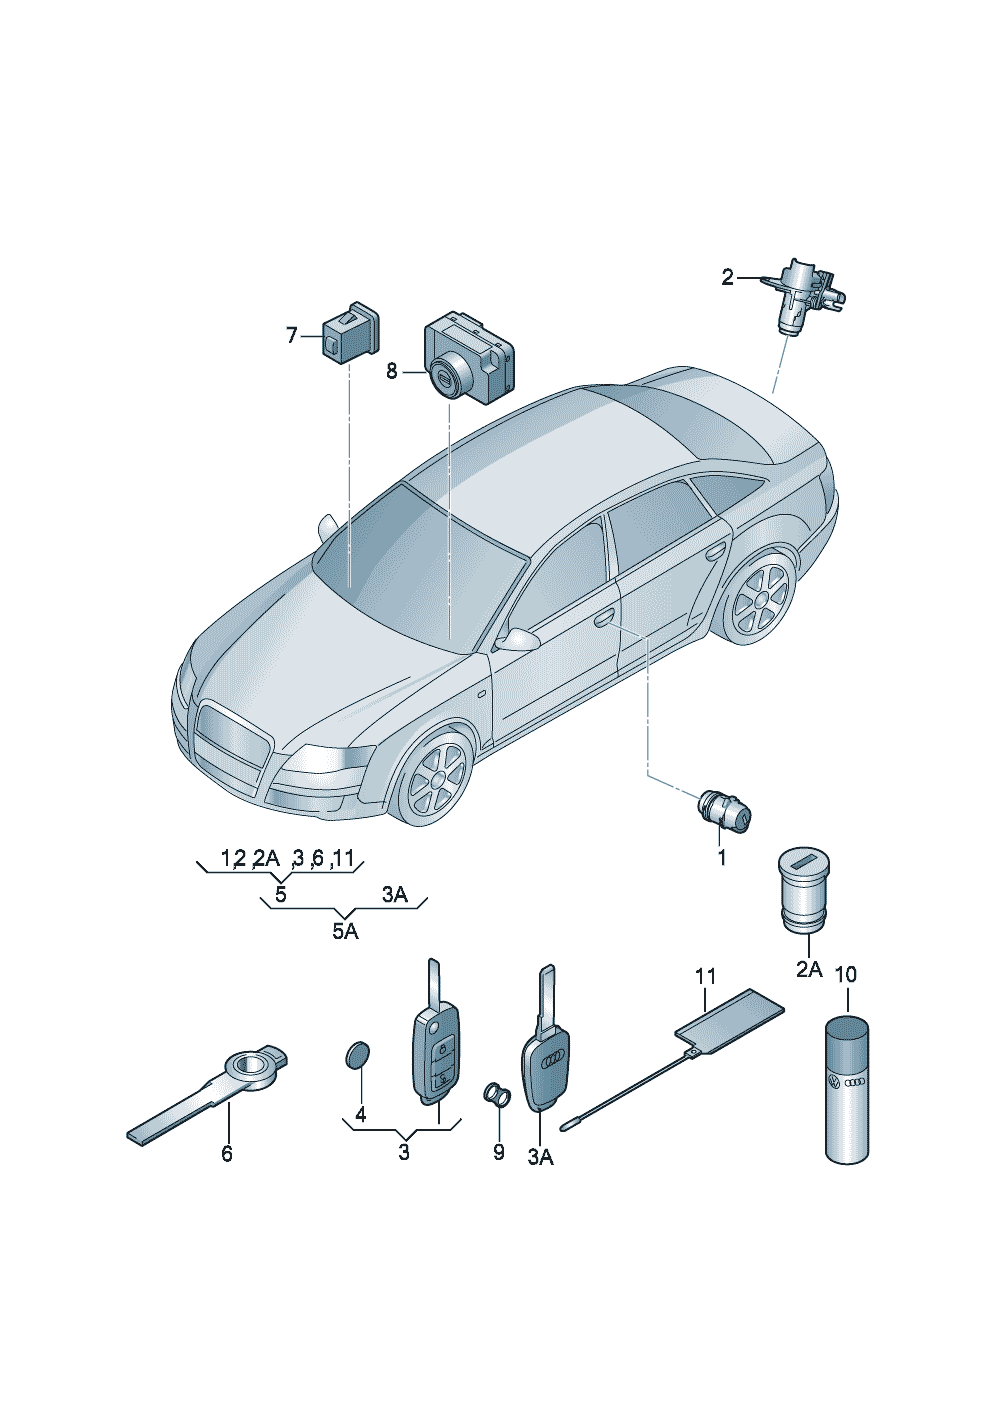 Личинка замкаКлюч  - Audi A6/Avant - a6